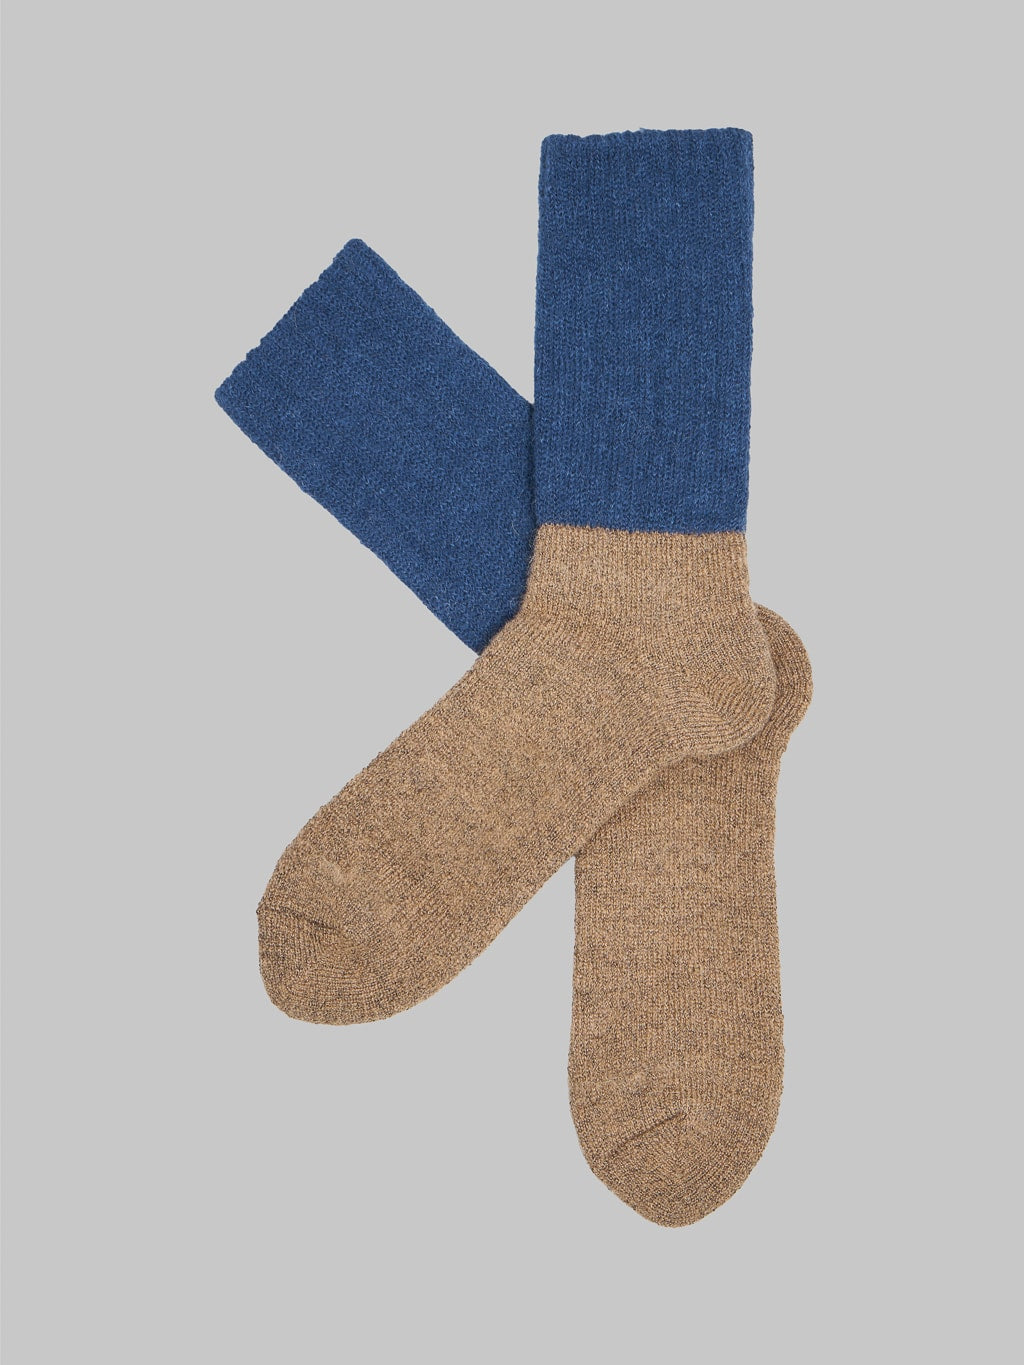 Nishiguchi Kutsushita Mohair Wool Pile Socks Navy Pair